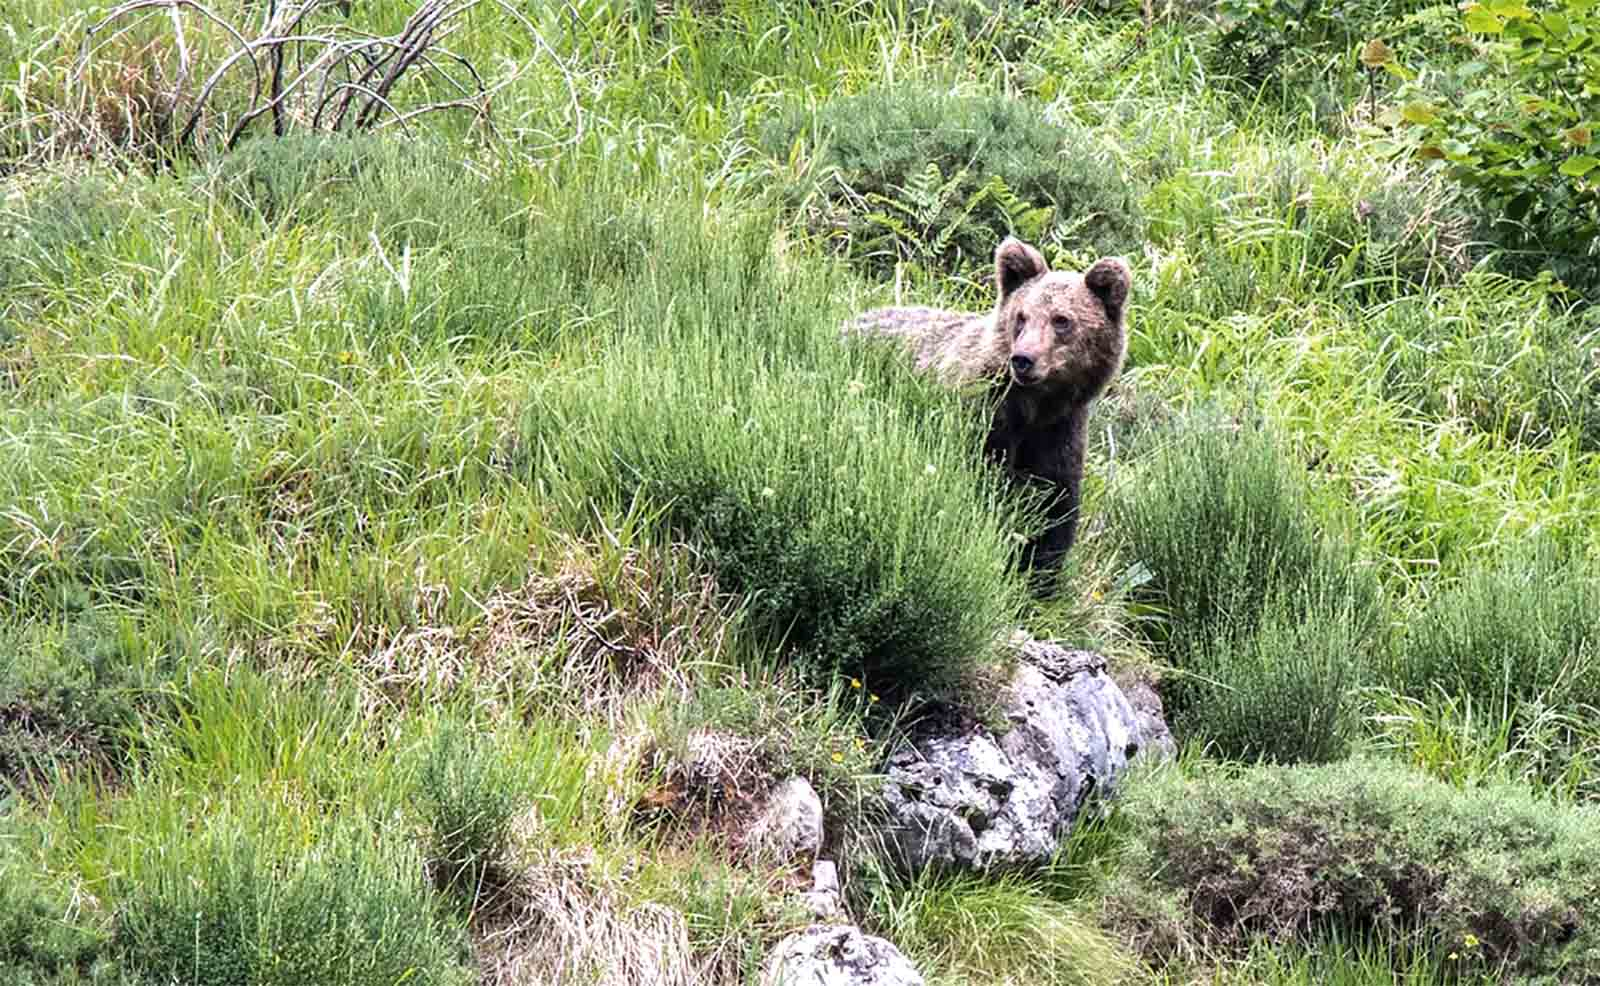 Serena Cuando Lubricar Castilla y León mejorará el hábitat del oso pardo con una experiencia  europea de restauración forestal - SoriaNoticias